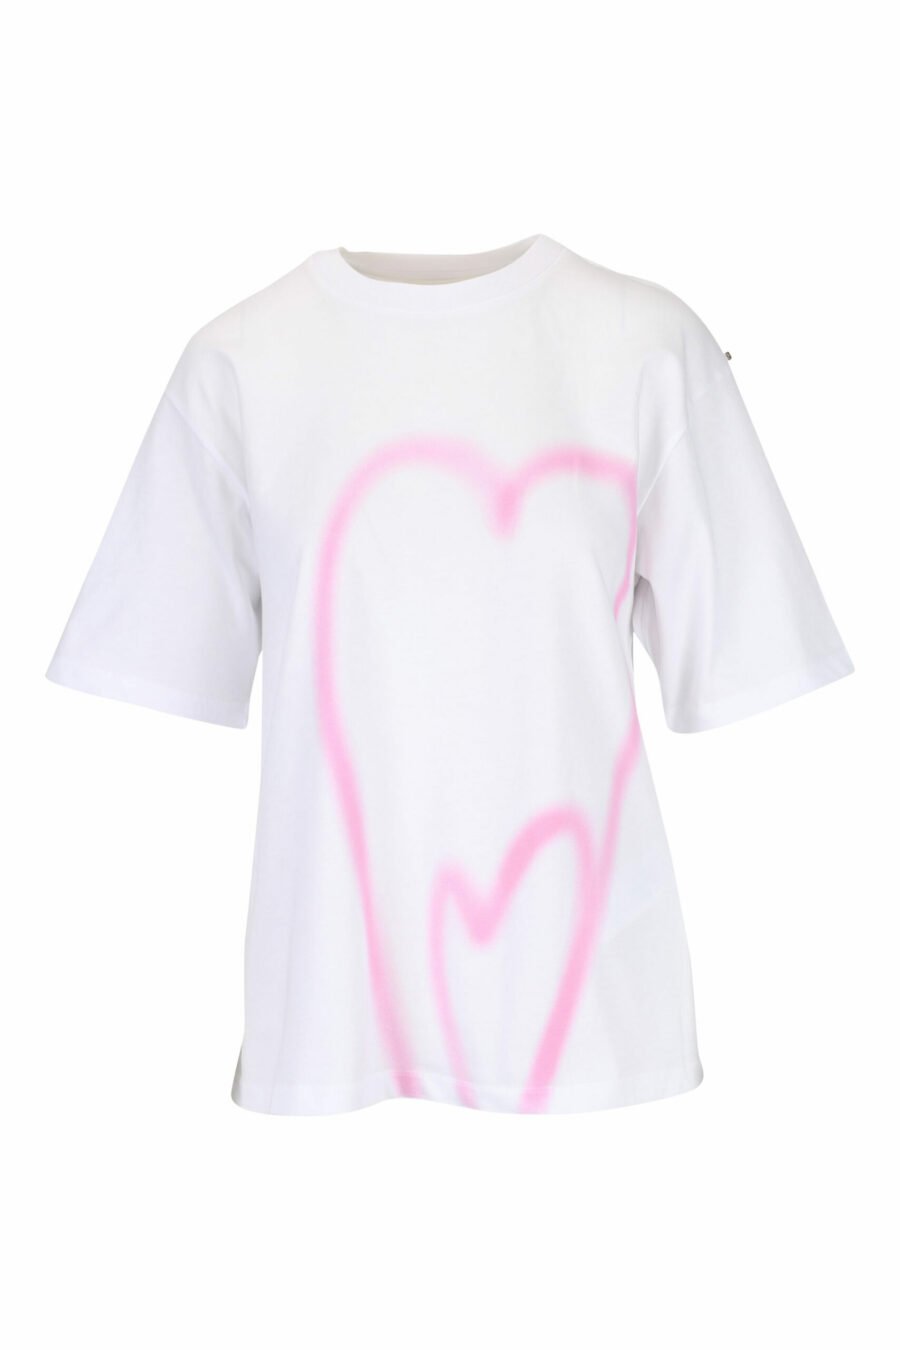 Weißes T-Shirt mit Herzaufdruck - 29710541060133 skaliert